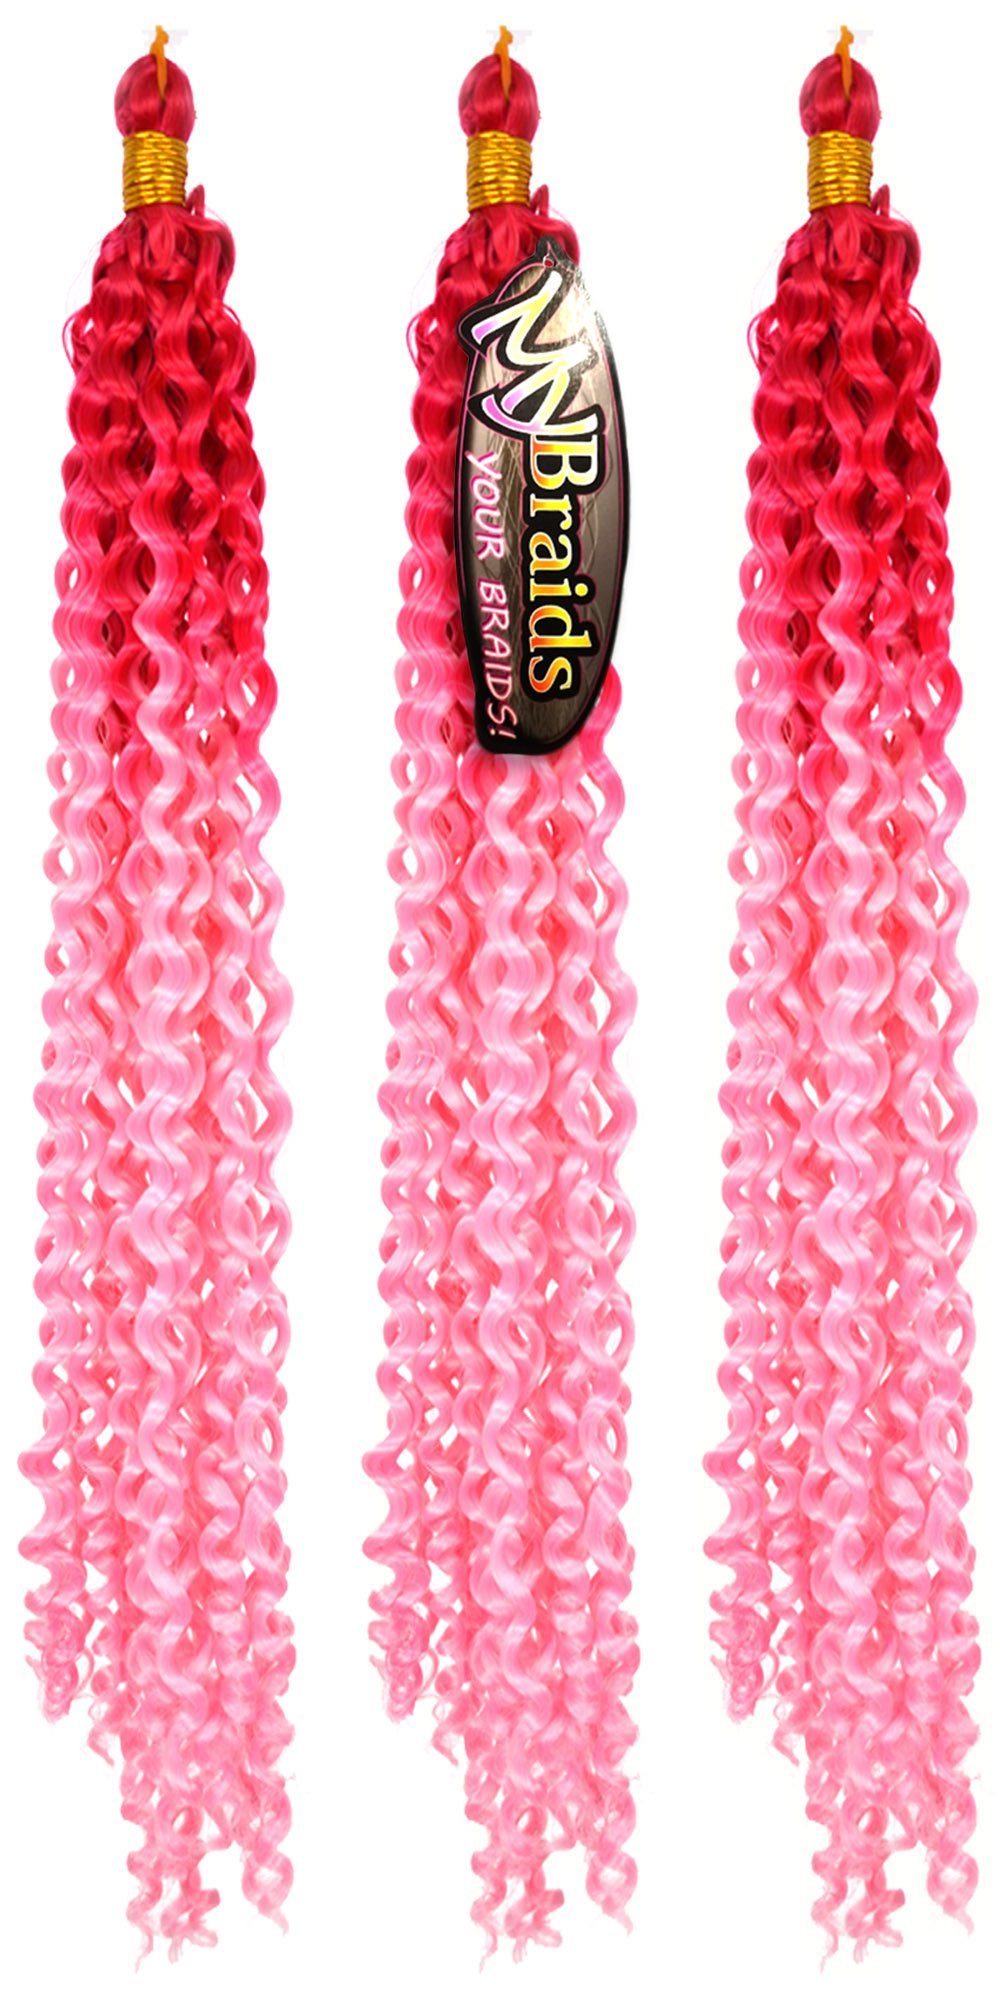 MyBraids YOUR BRAIDS! Kunsthaar-Extension Deep Wave Crochet Braids 3er Pack Flechthaar Ombre Zöpfe Wellig 17-WS Dunkles Pink-Hellrosa